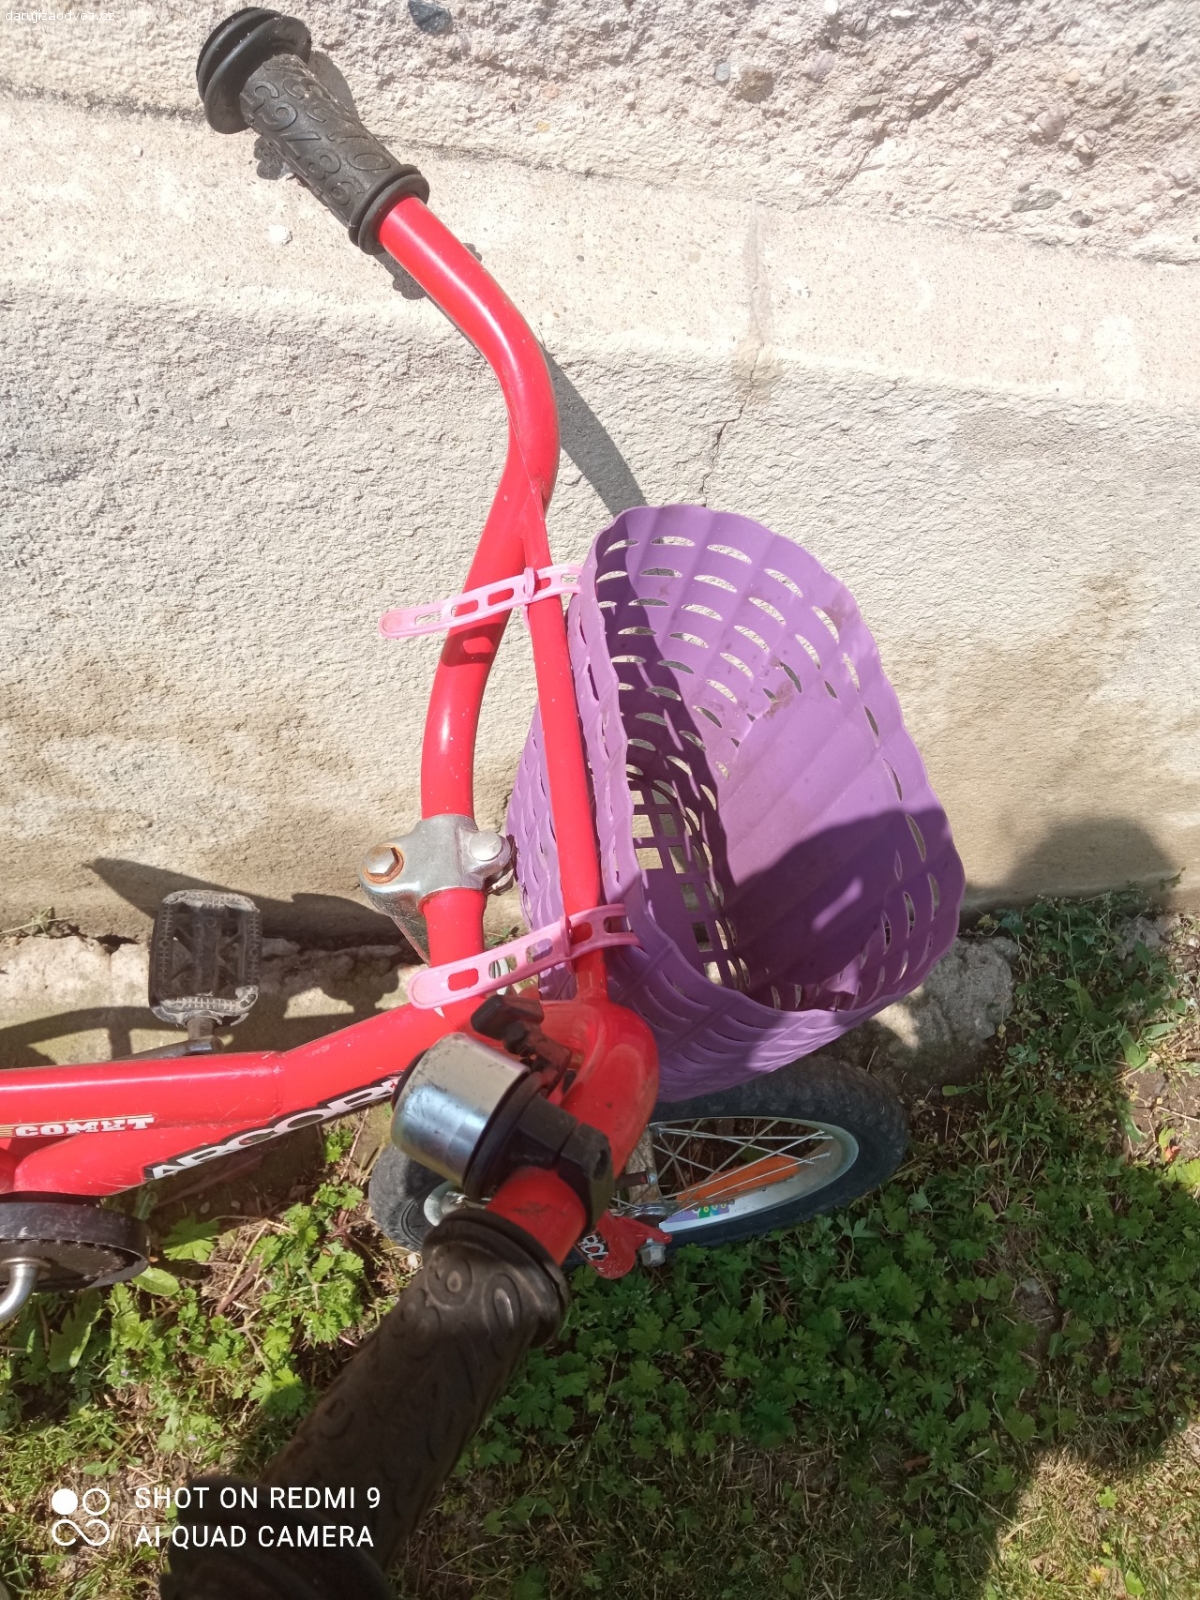 Dětské kolo. daruji za odvoz dětské kolo červené s košíčkem s princeznami 
stav viz fotky (prázdná kolo, rez)
velikost odhadem 3-5 let